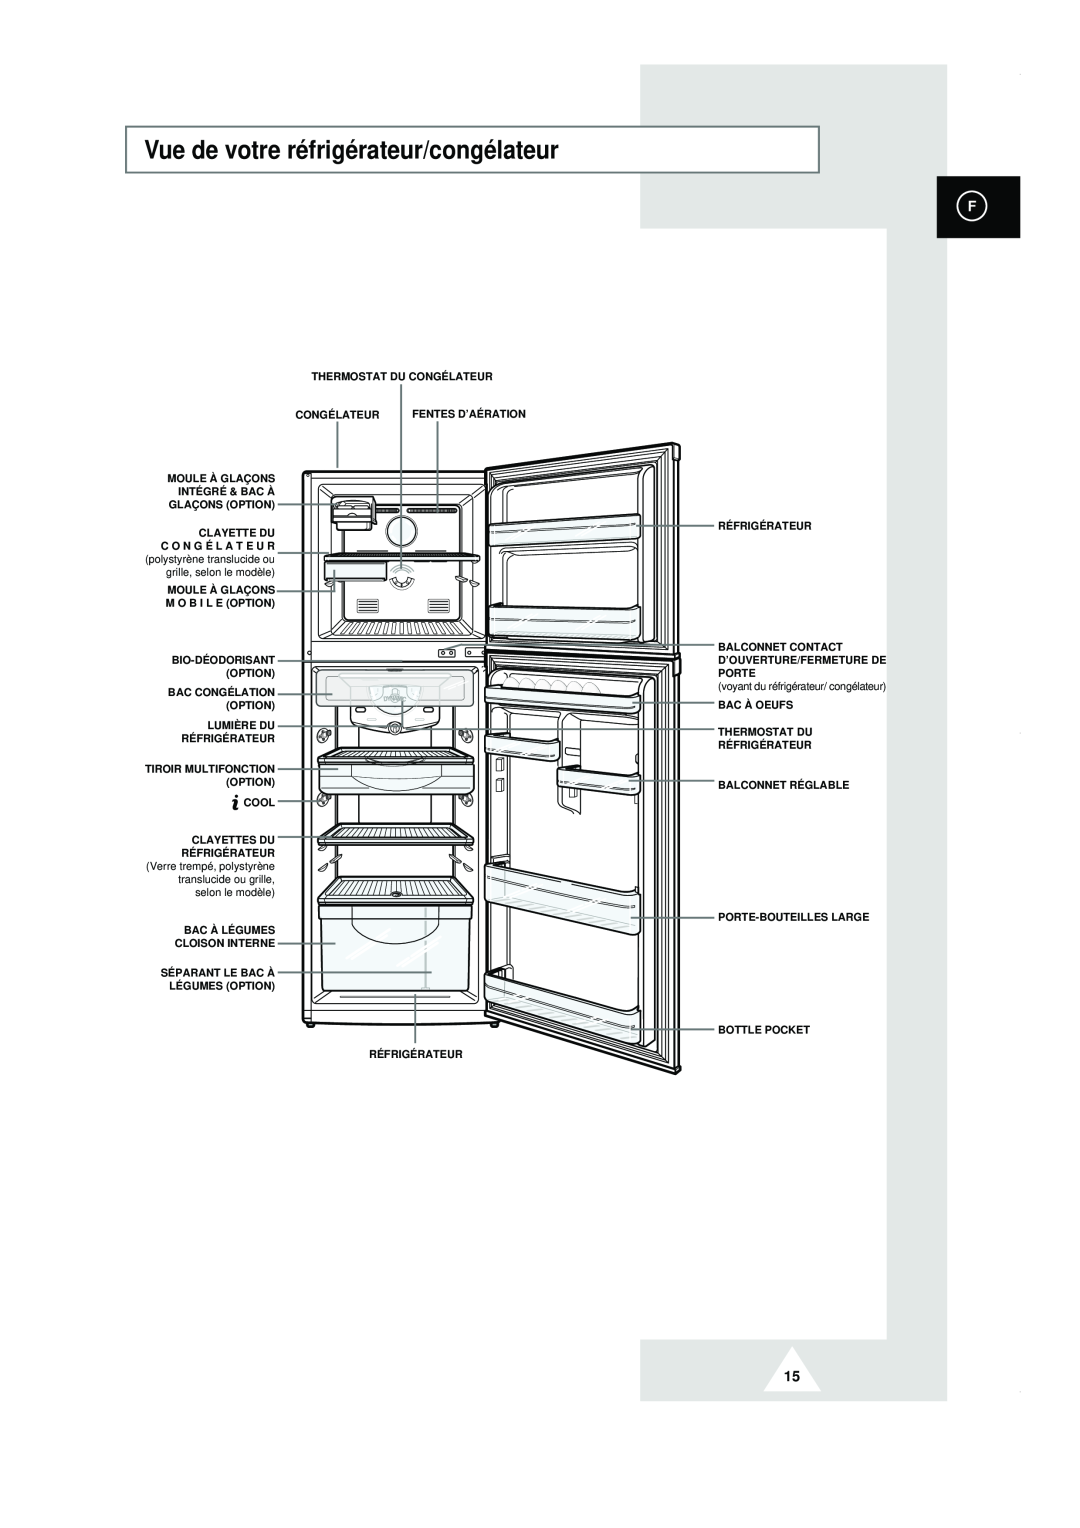 Samsung RT44MAMS1/XEF, RT44MASW1/XEF manual Vue de votre réfrigérateur/congélateur, voyant du réfrigérateur/ congélateur 